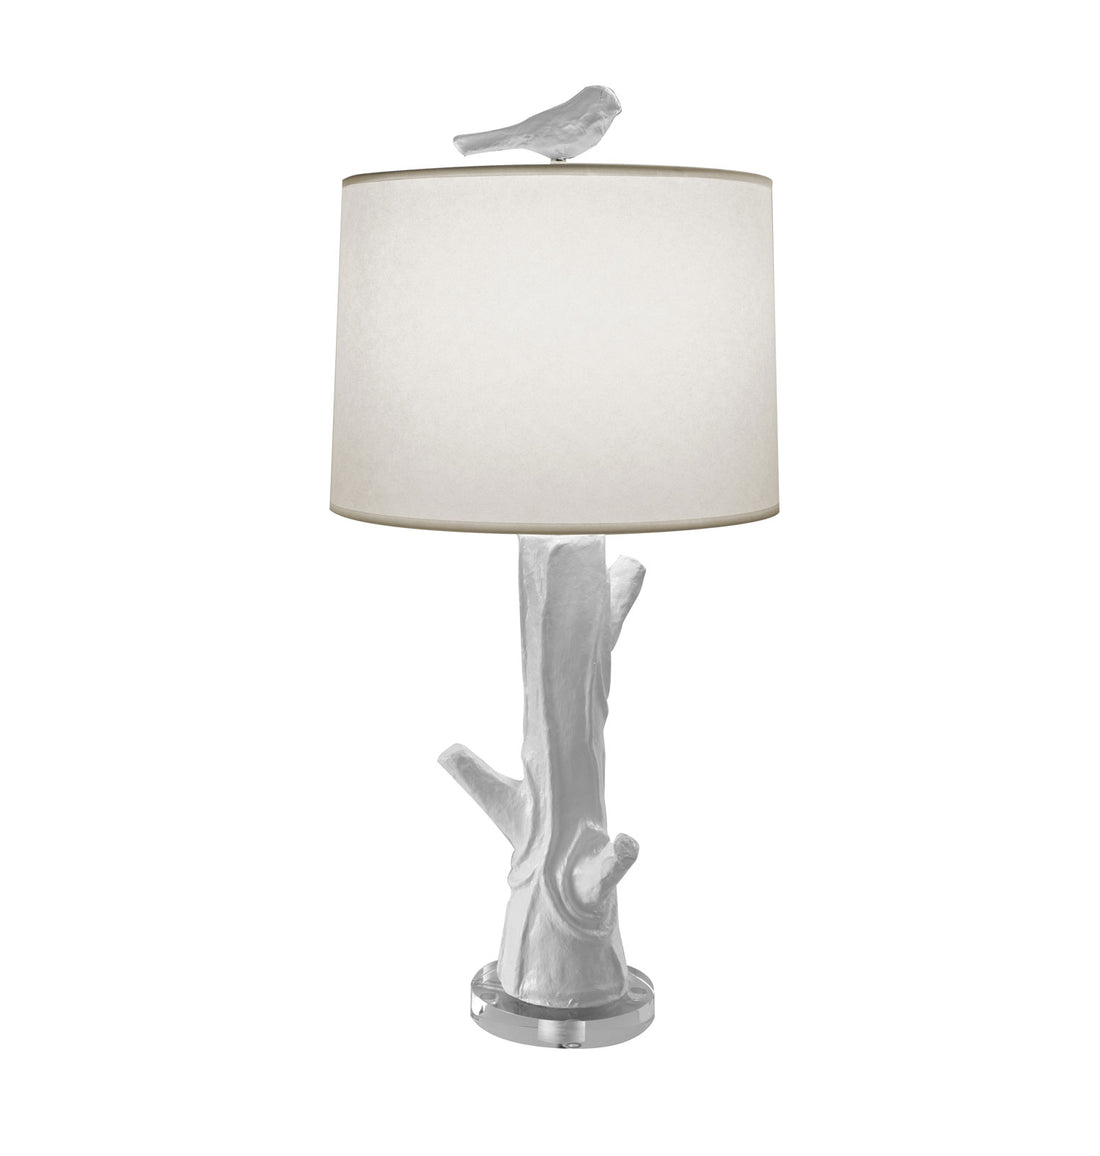 white Steph wood table lamp, papier mache faux bois design, bird finial.